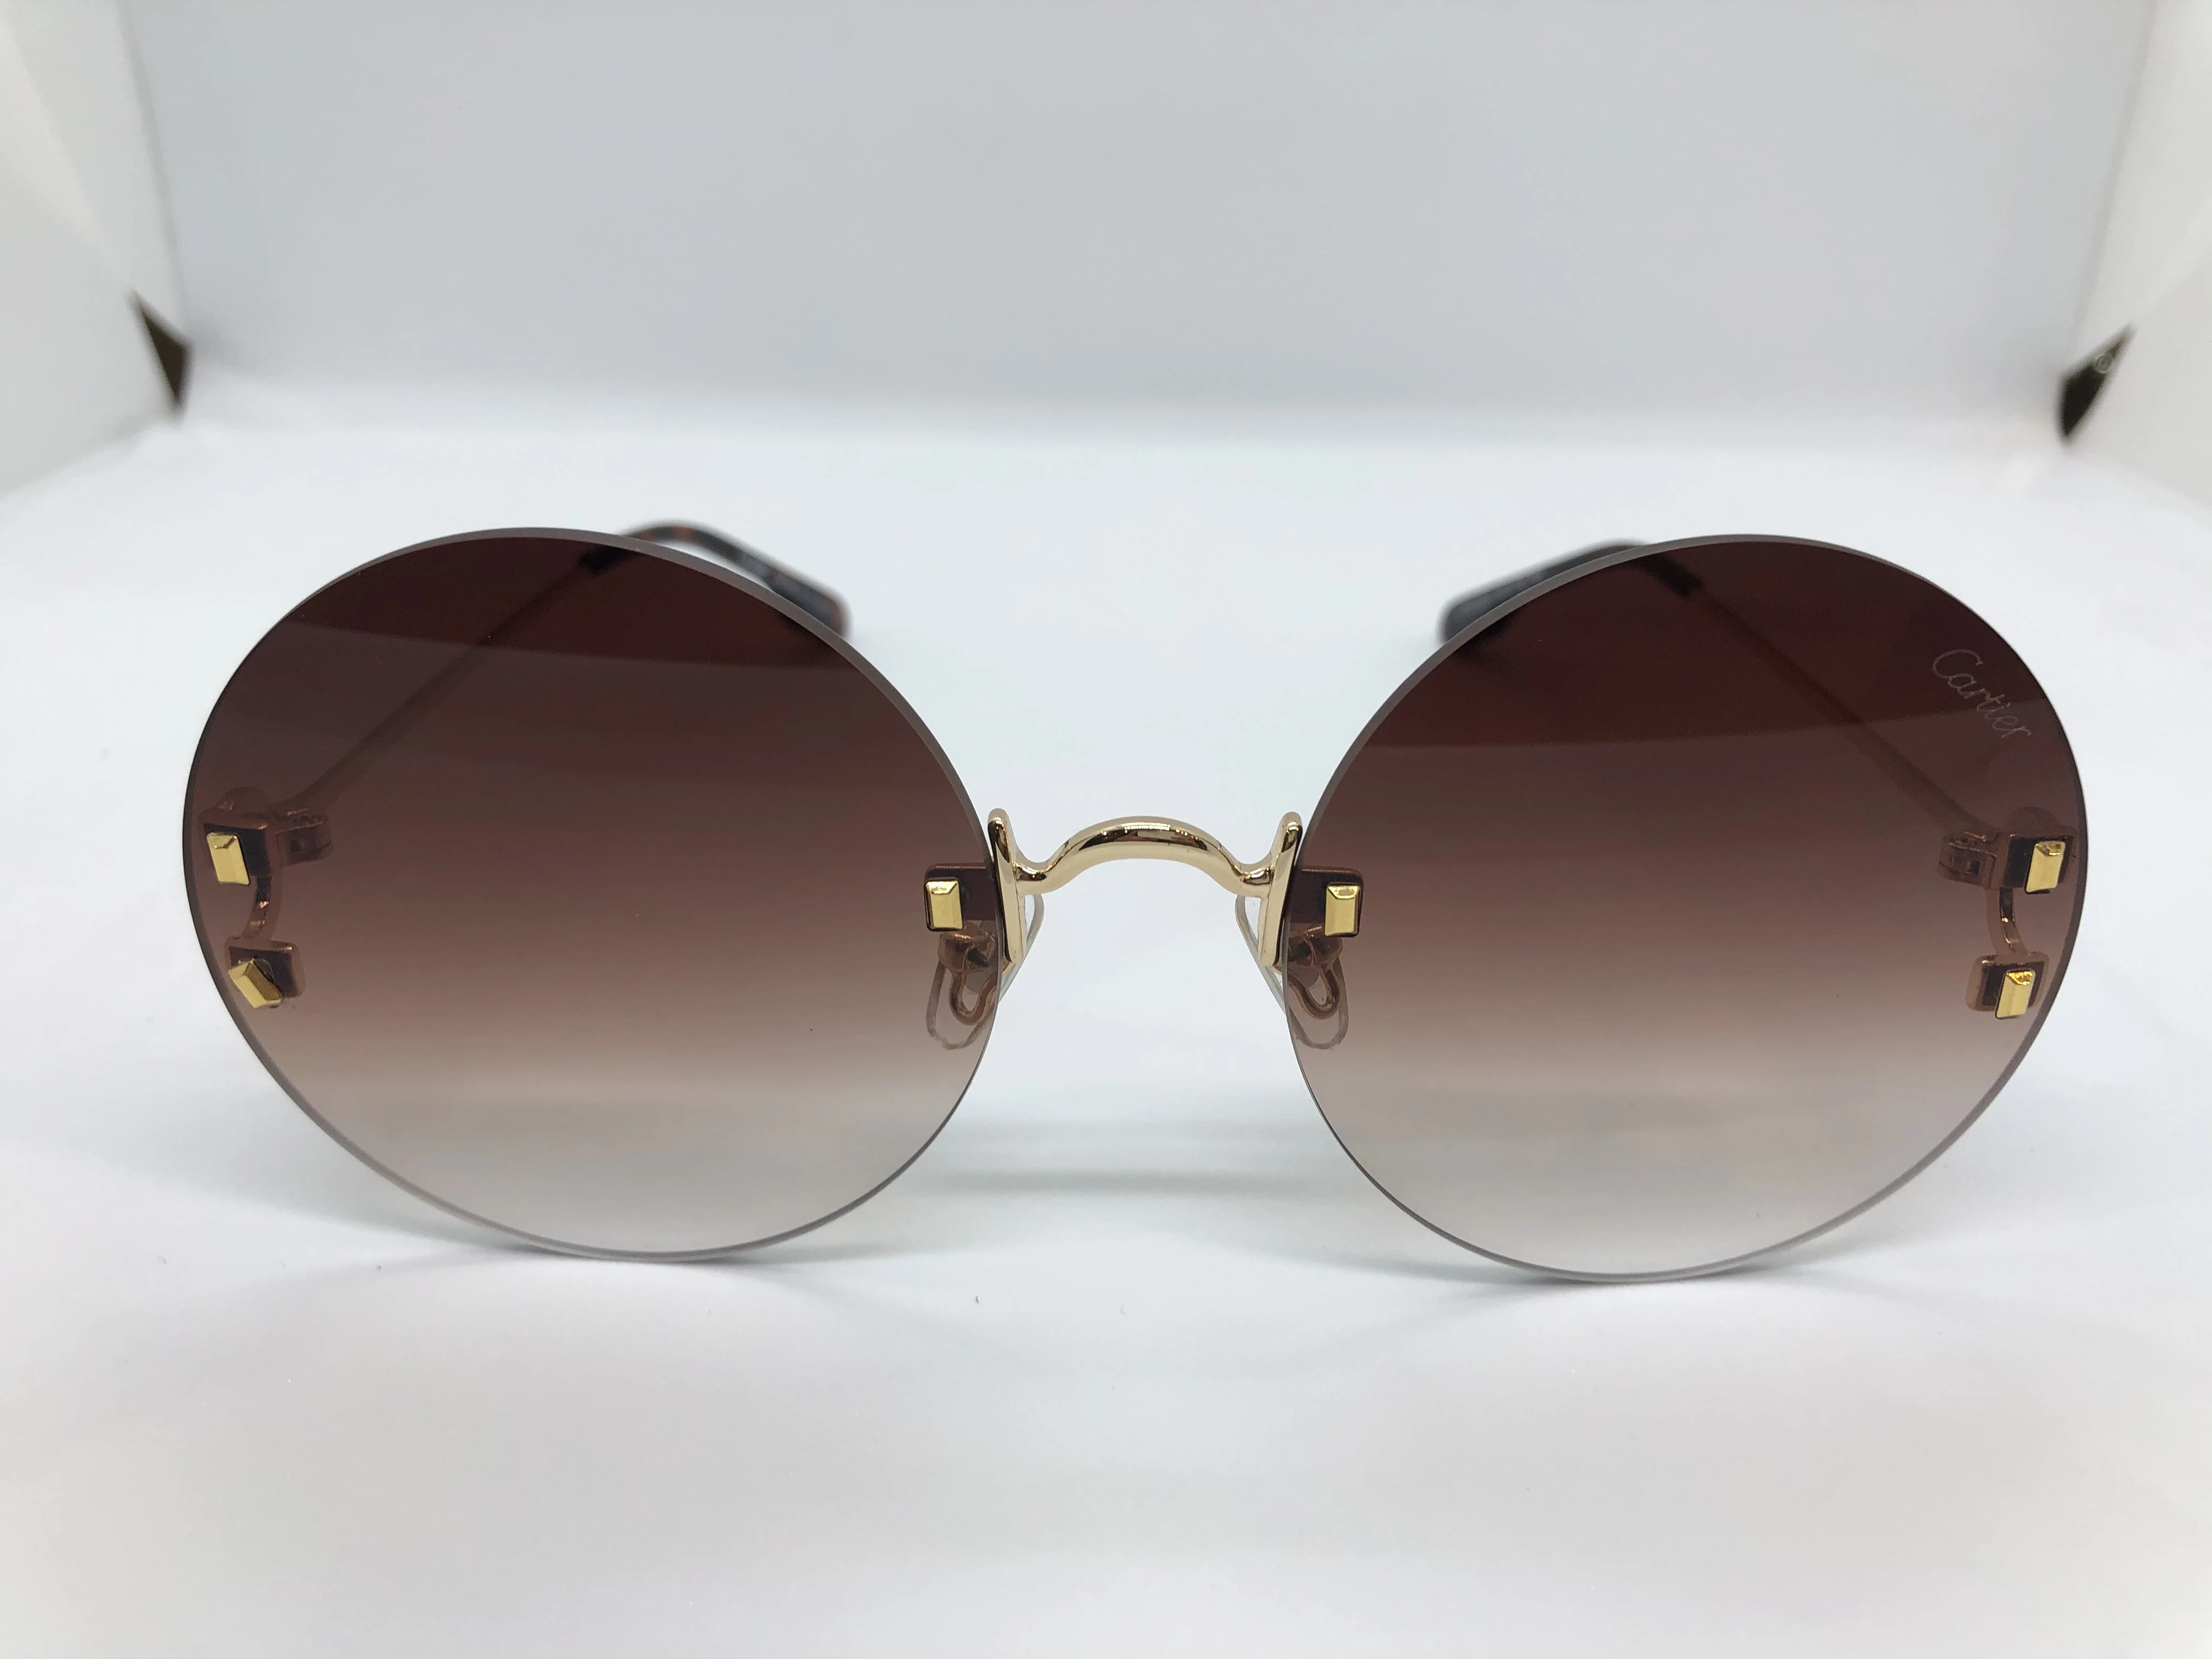 نظارة شمسية كارتير- بدون اطار- وعدسات بني متدرج - وزراع ذهبي معدن - حريمي